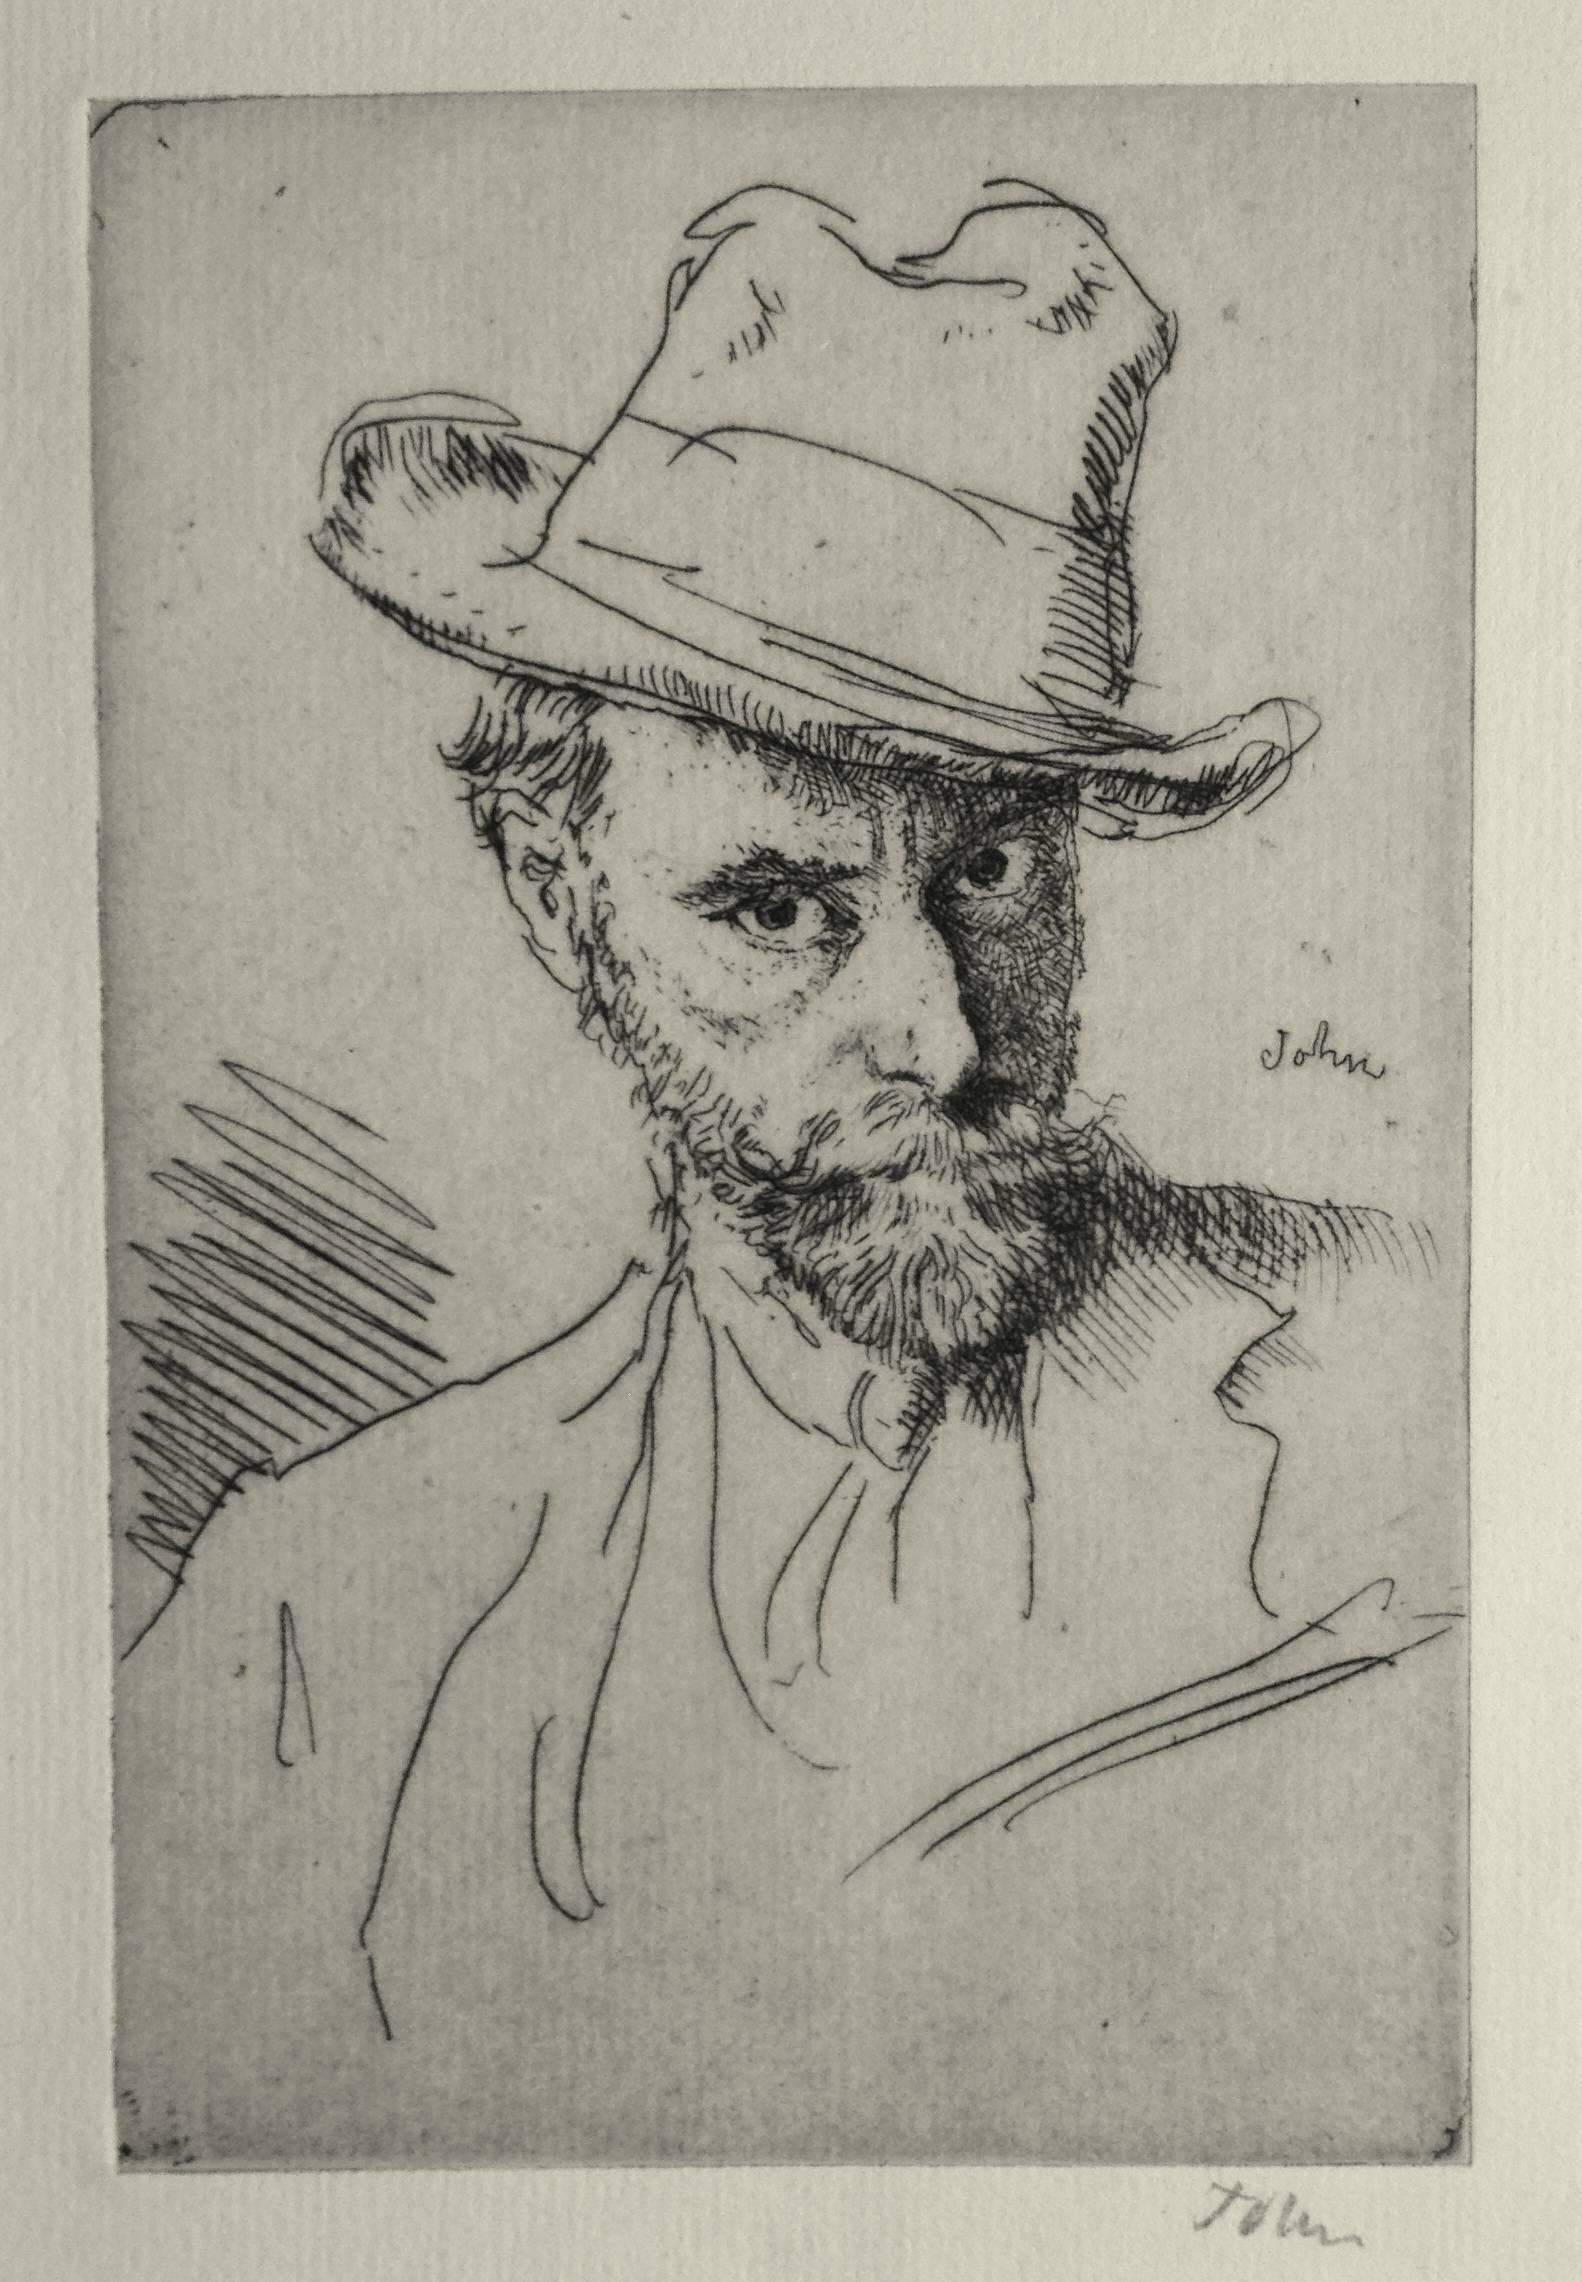 Augustus John Portrait Print - Self Portrait with Hat